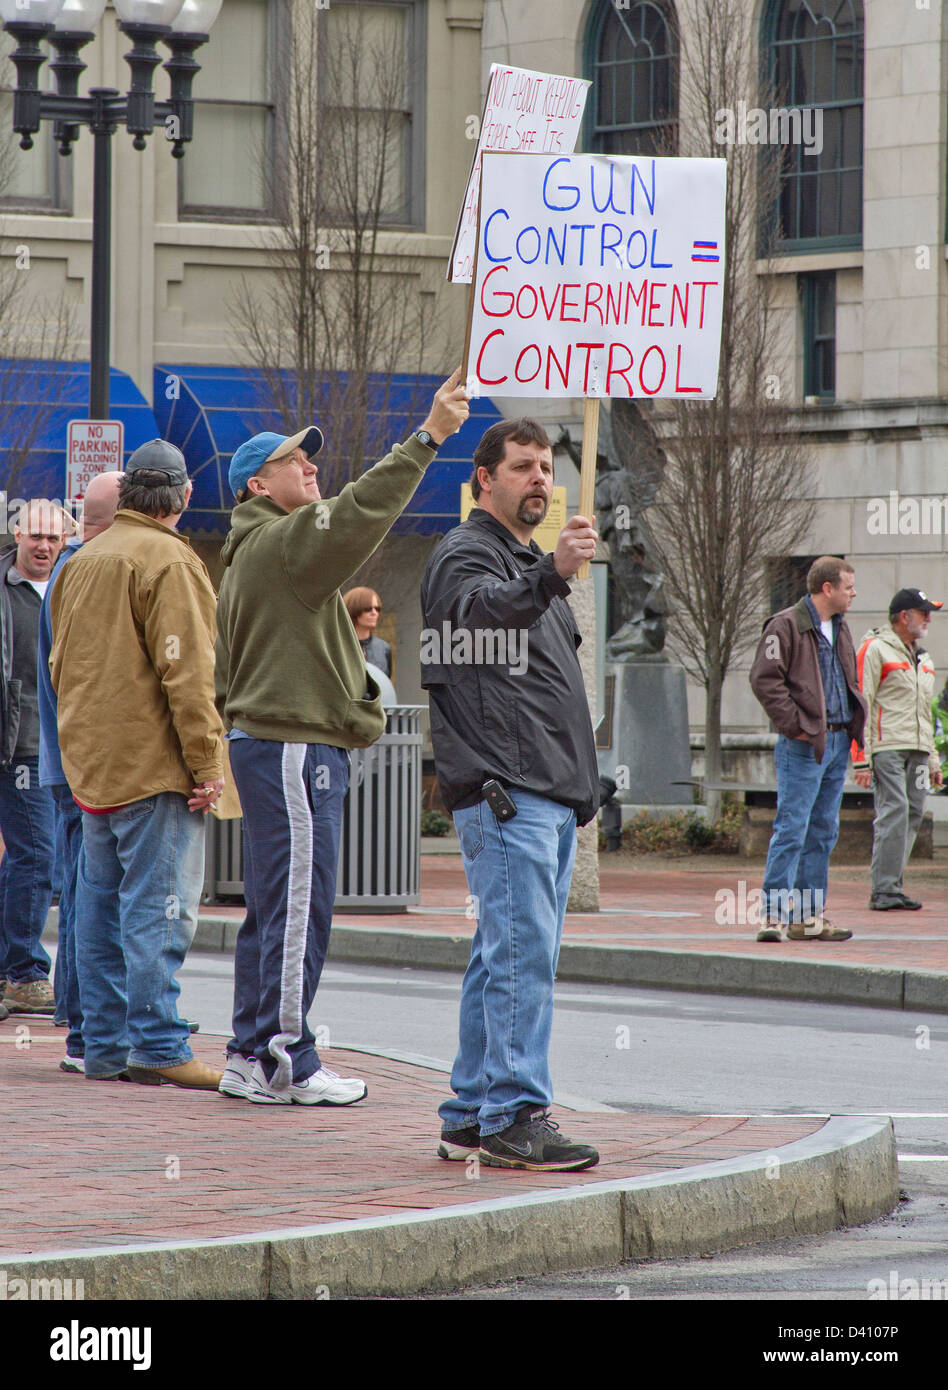 Gli uomini detengono il controllo dell'arma segni di protesta fino a macchine passando a una pistola anti rally di controllo in Asheville NC su 23 Febbraio, 2013 Foto Stock